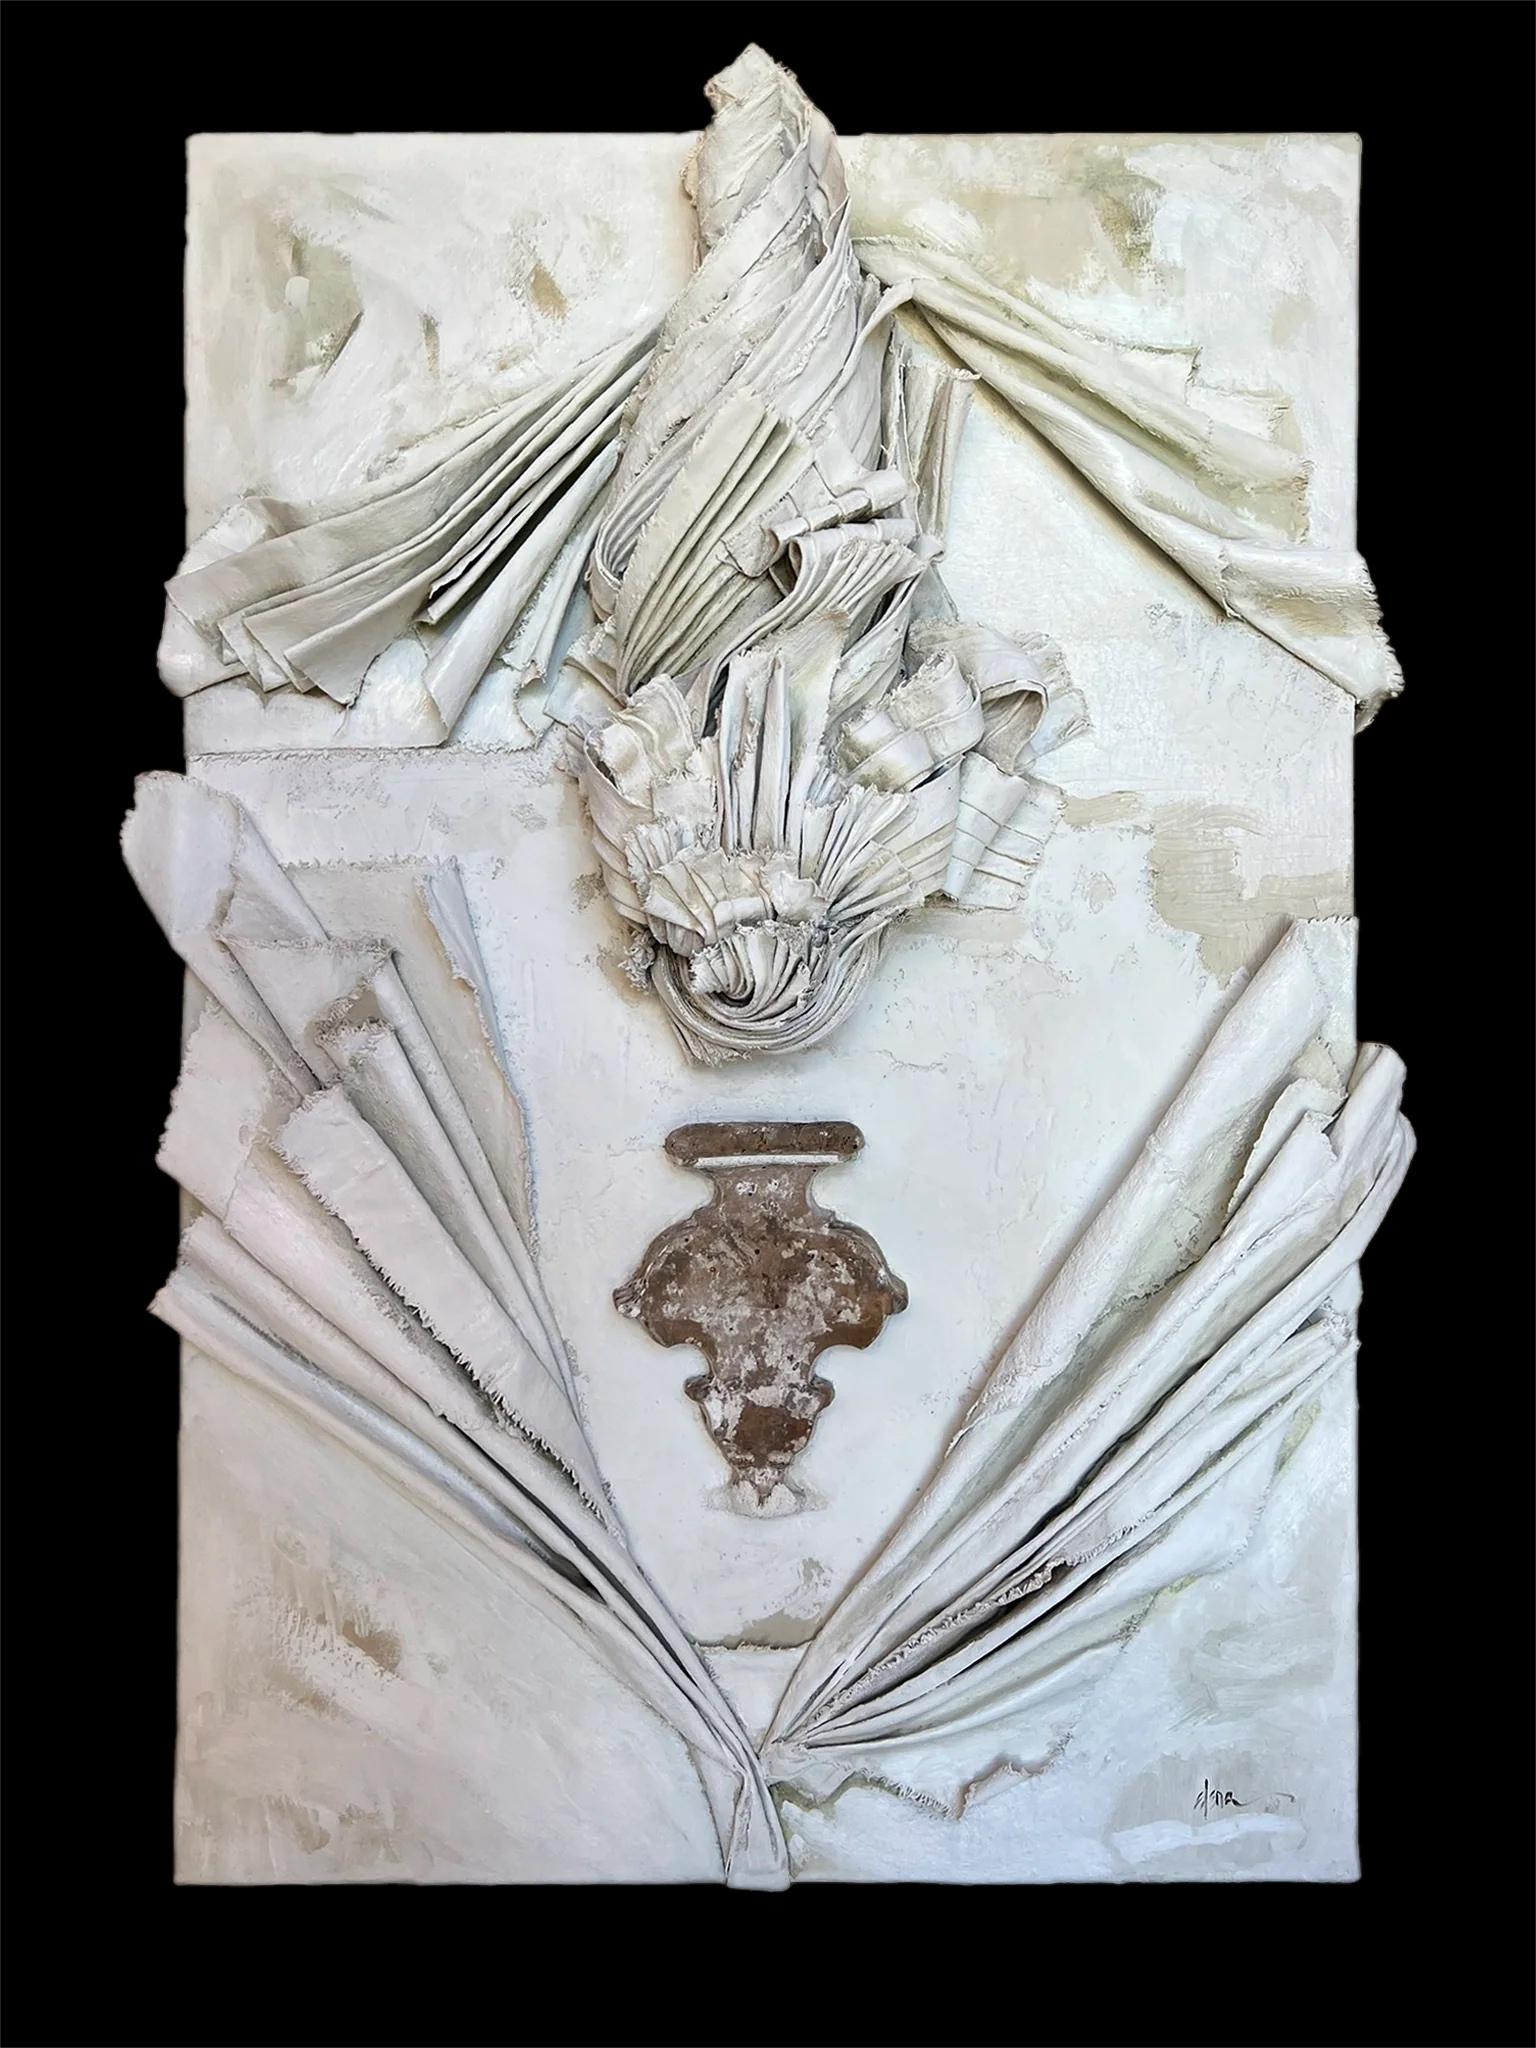 Toile sculpturale en relief avec un fragment de Florence italienne du XVIIe siècle par Elena Rousseau.

La toile sculptée est moulée à l'aide de la toile Material, d'huiles et de cendres sur carton. Le fragment original de la Florence italienne du